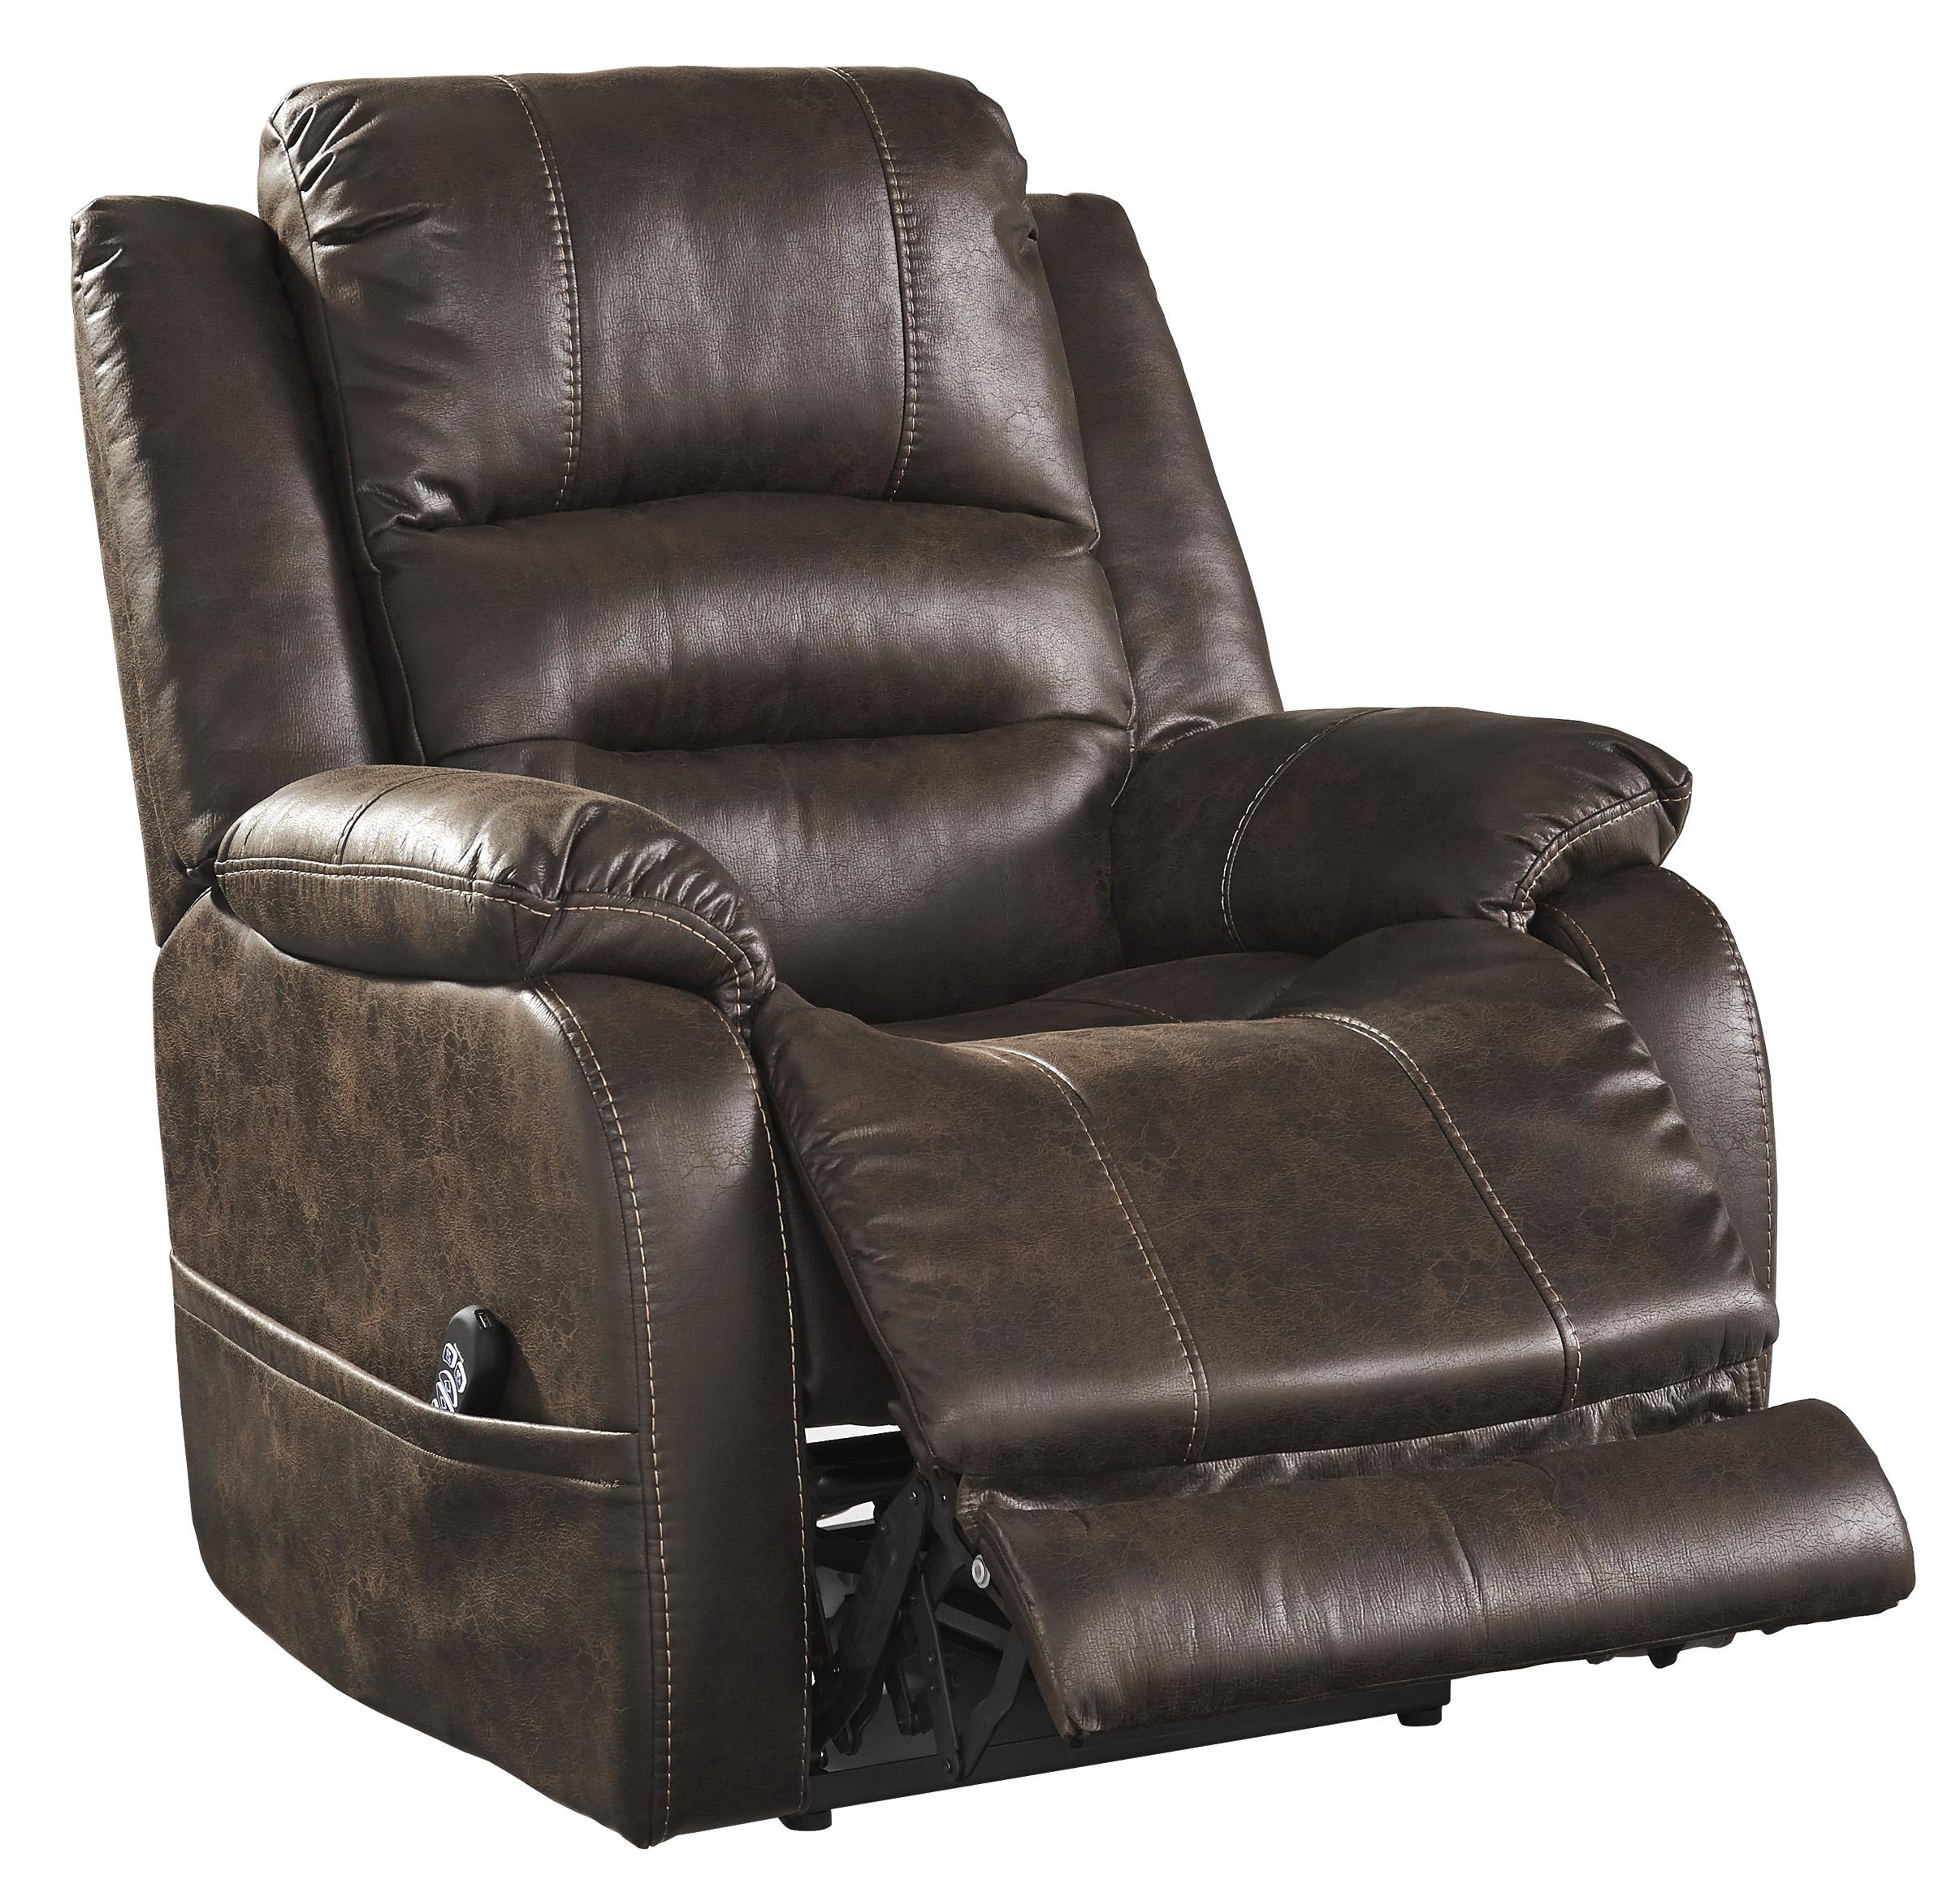 

    
Ashley Furniture Barling Reclining Chair Walnut 6880213
